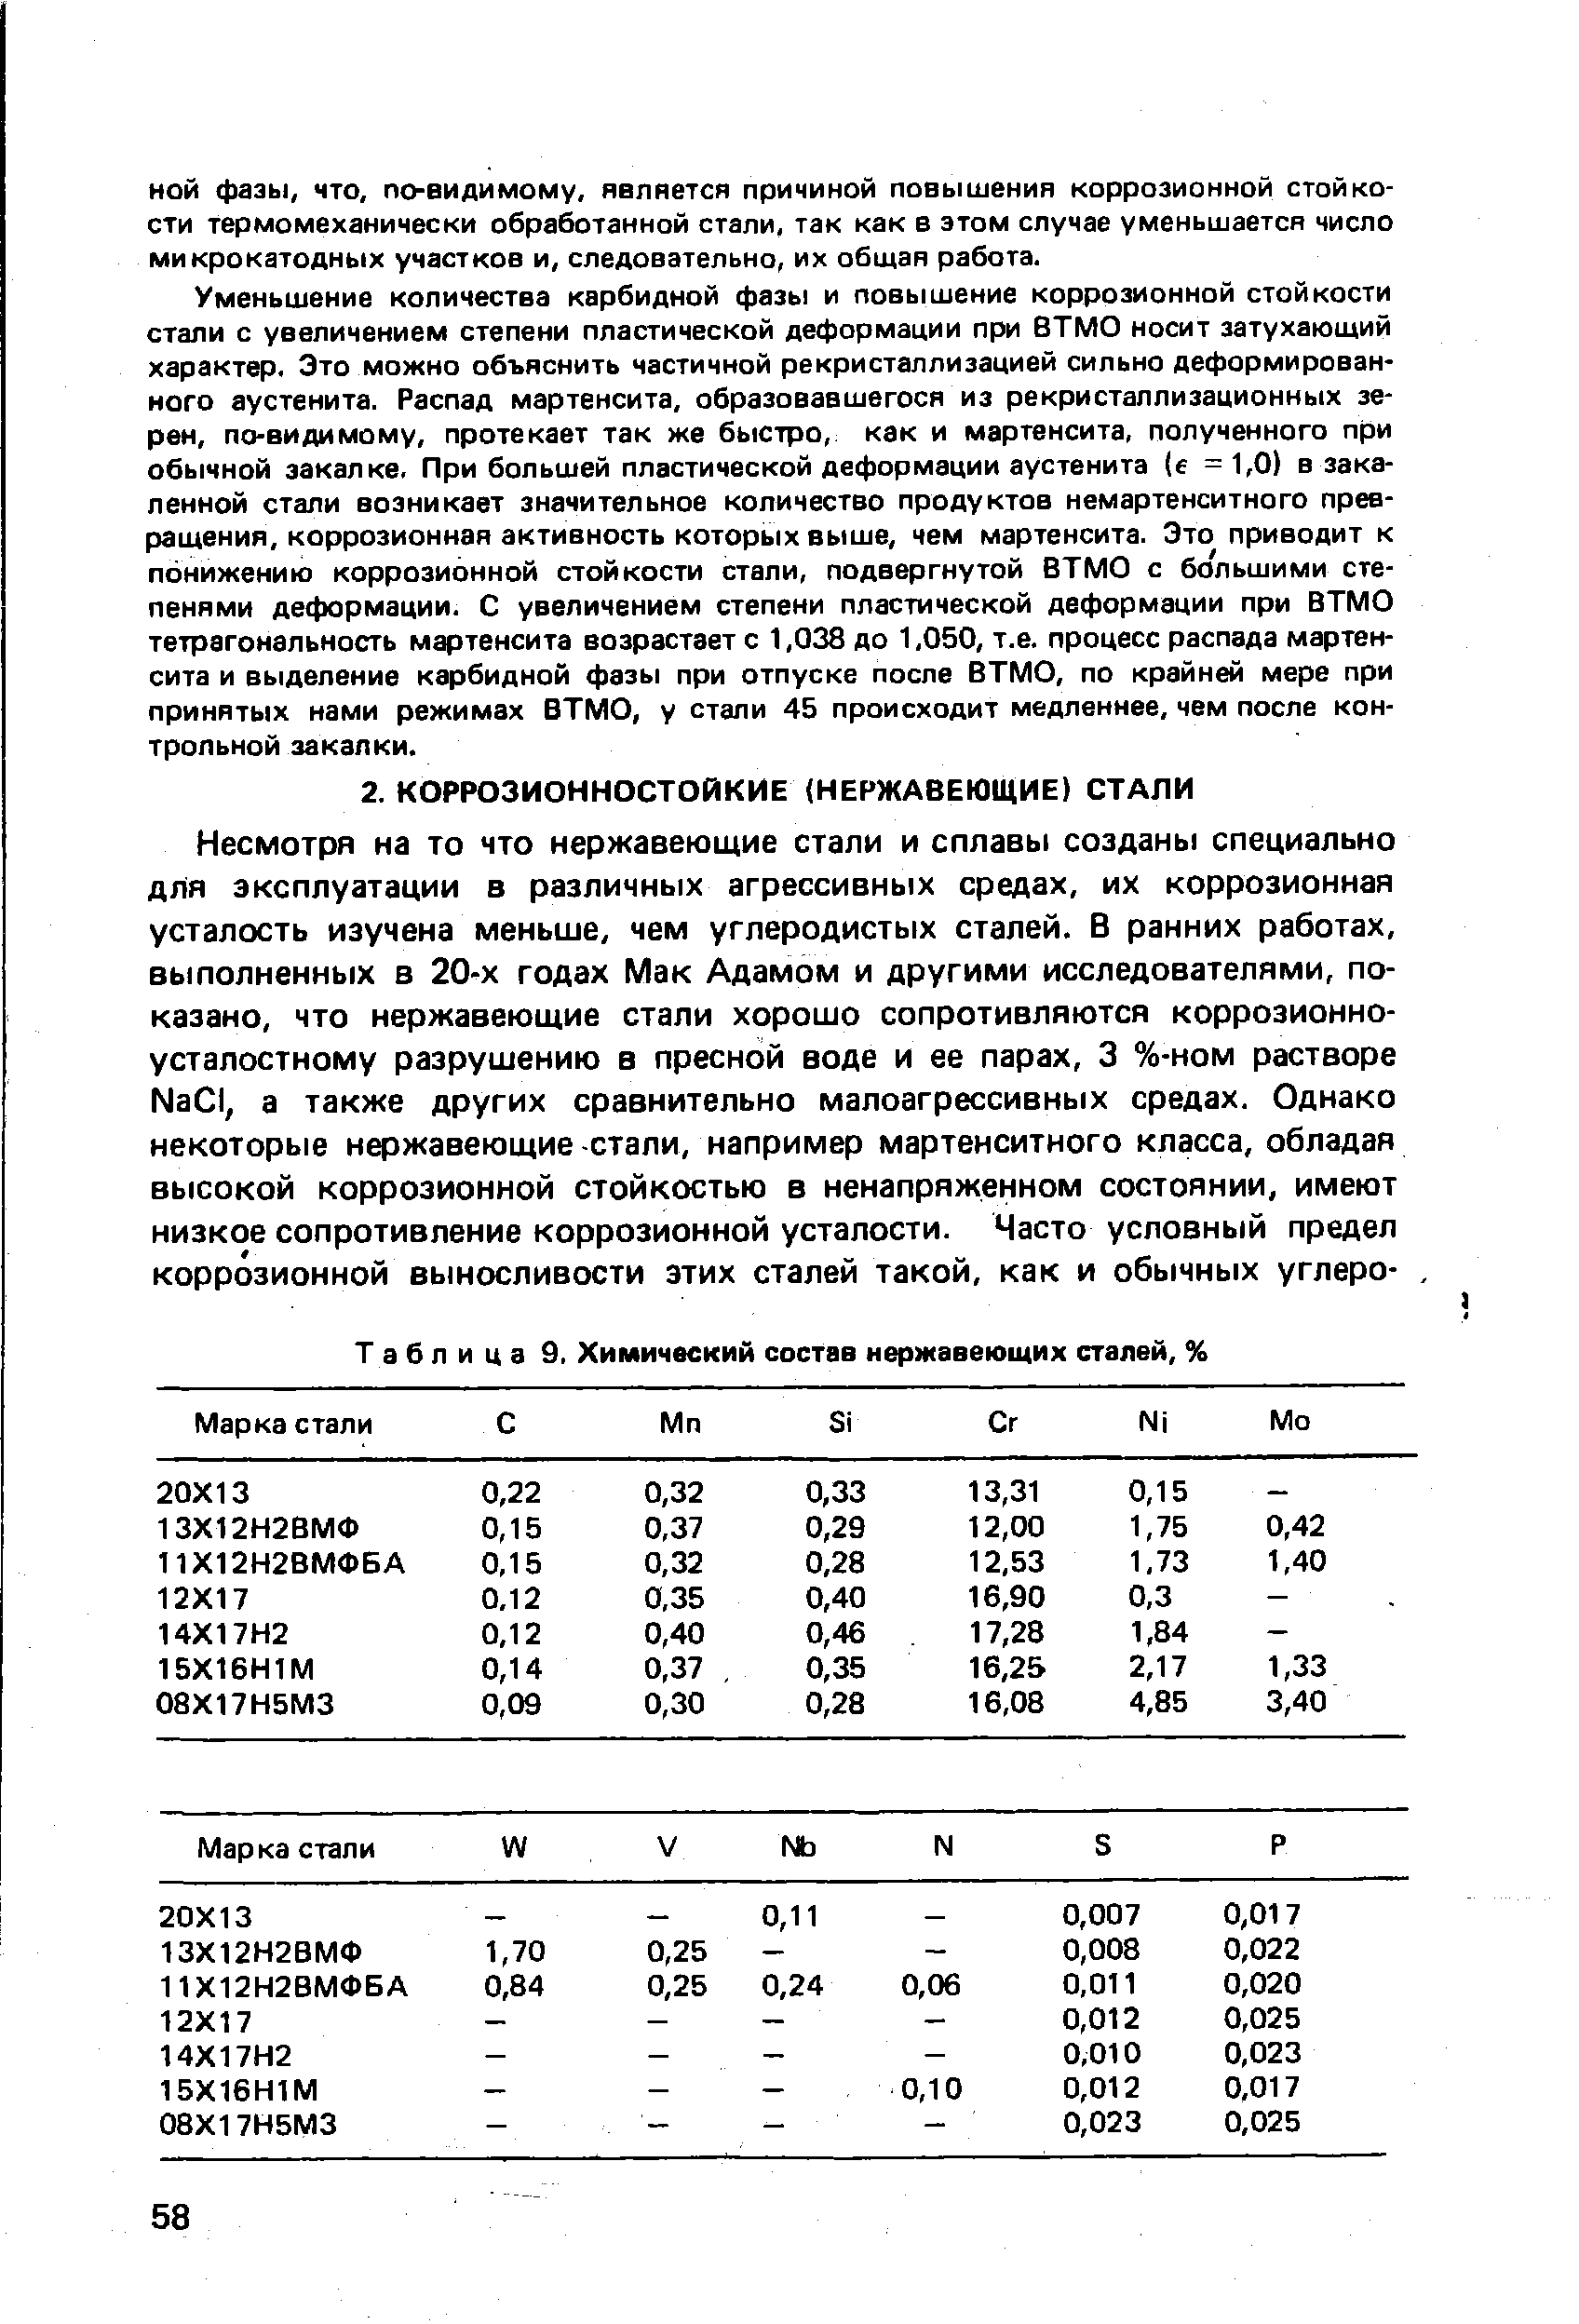 Таблица 9, <a href="/info/59554">Химический состав нержавеющих</a> сталей, %
